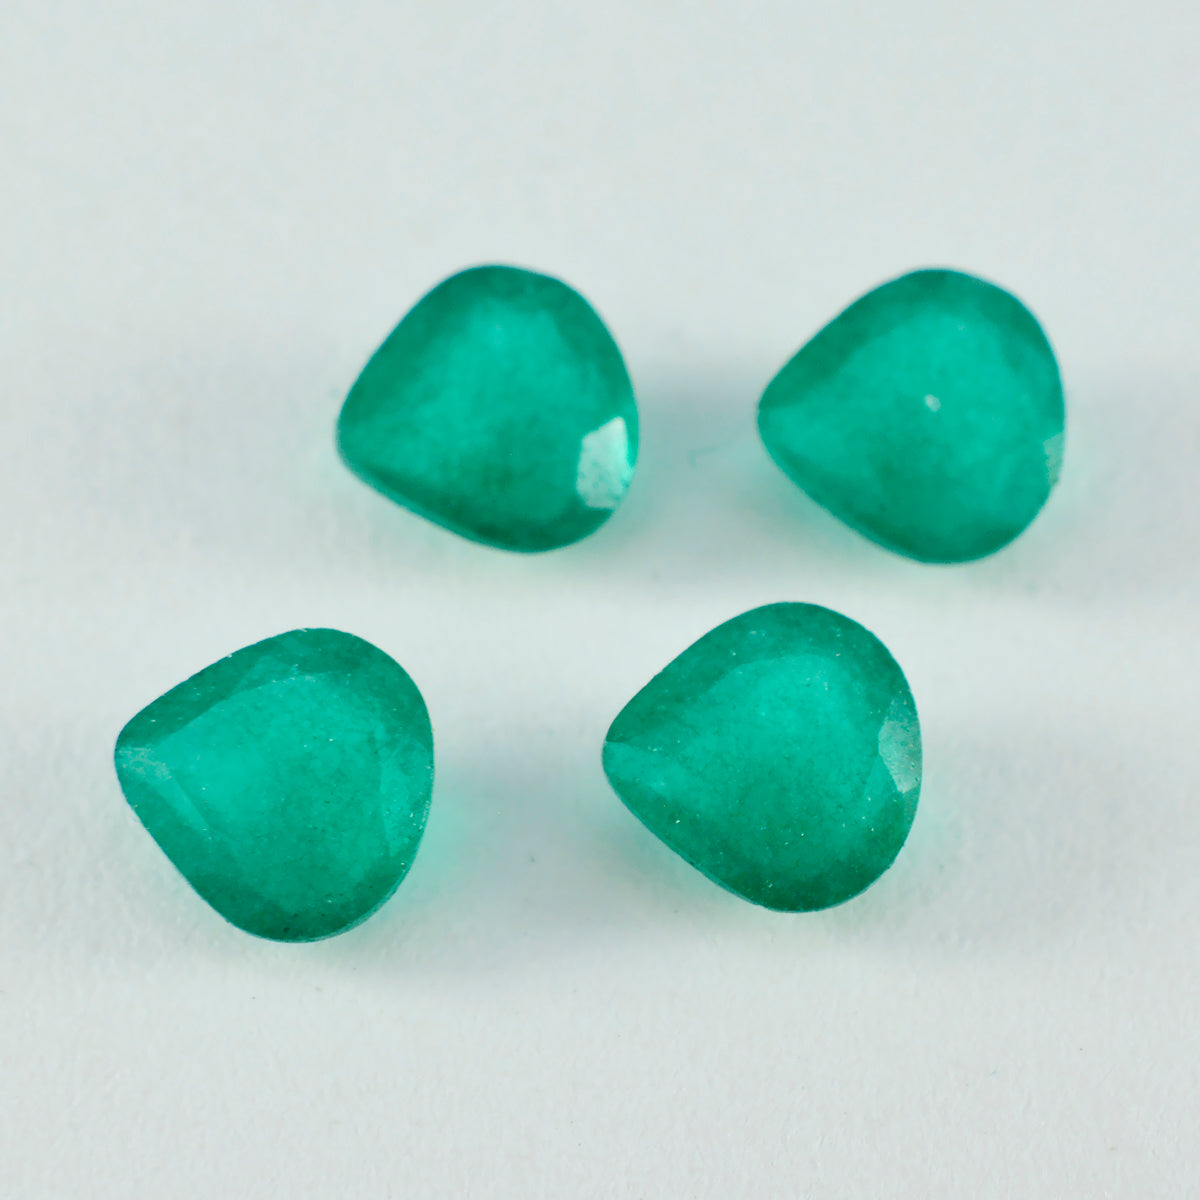 riyogems 1 pezzo di diaspro verde autentico sfaccettato 14x14 mm a forma di cuore, pietra preziosa di buona qualità